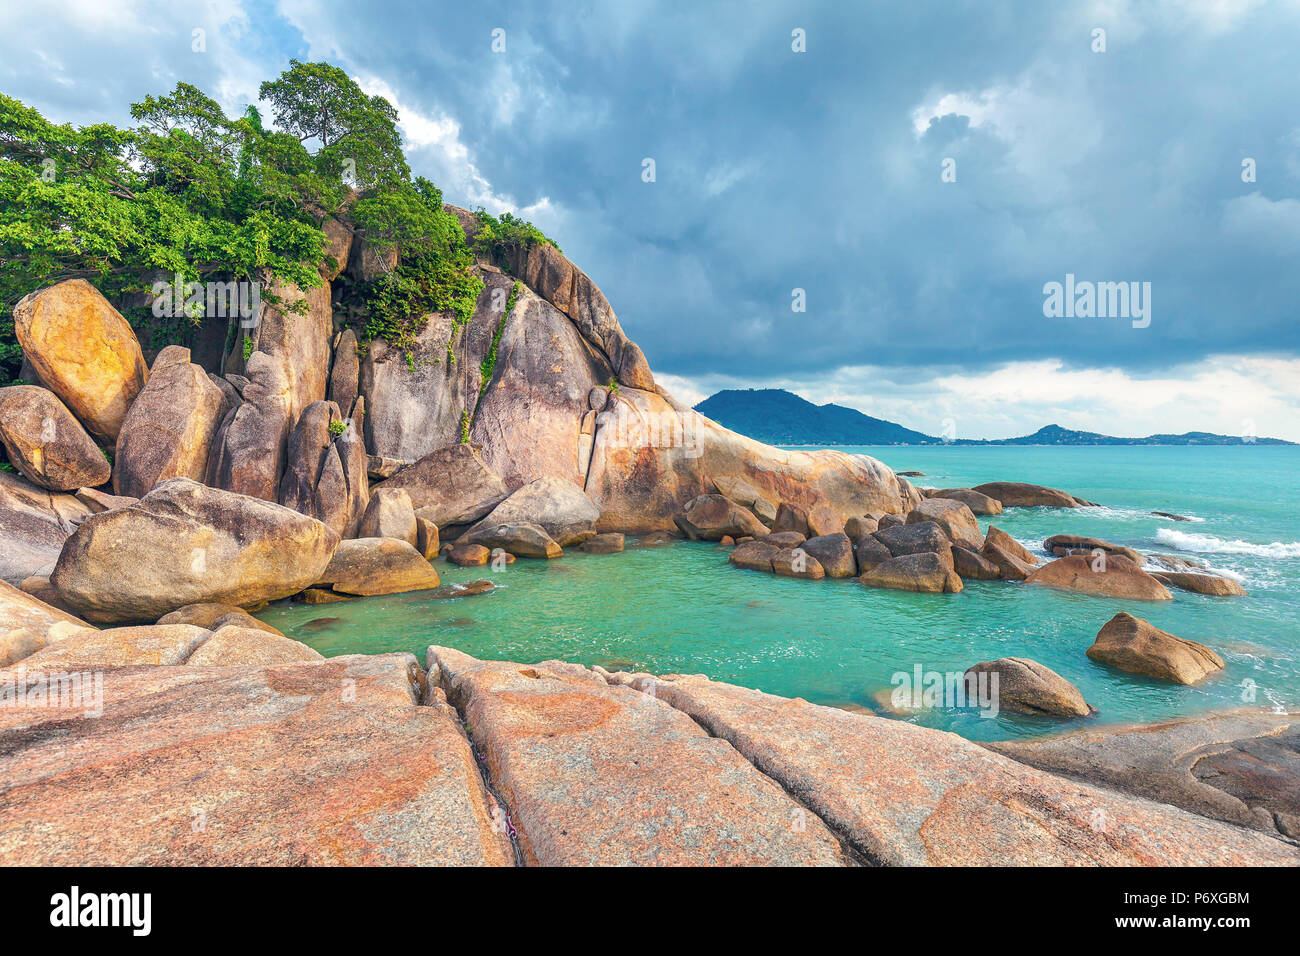 Hin Ta und Hin Yai Felsen. Ein berühmter Ort auf der Insel Koh Samui in Thailand. Stockfoto